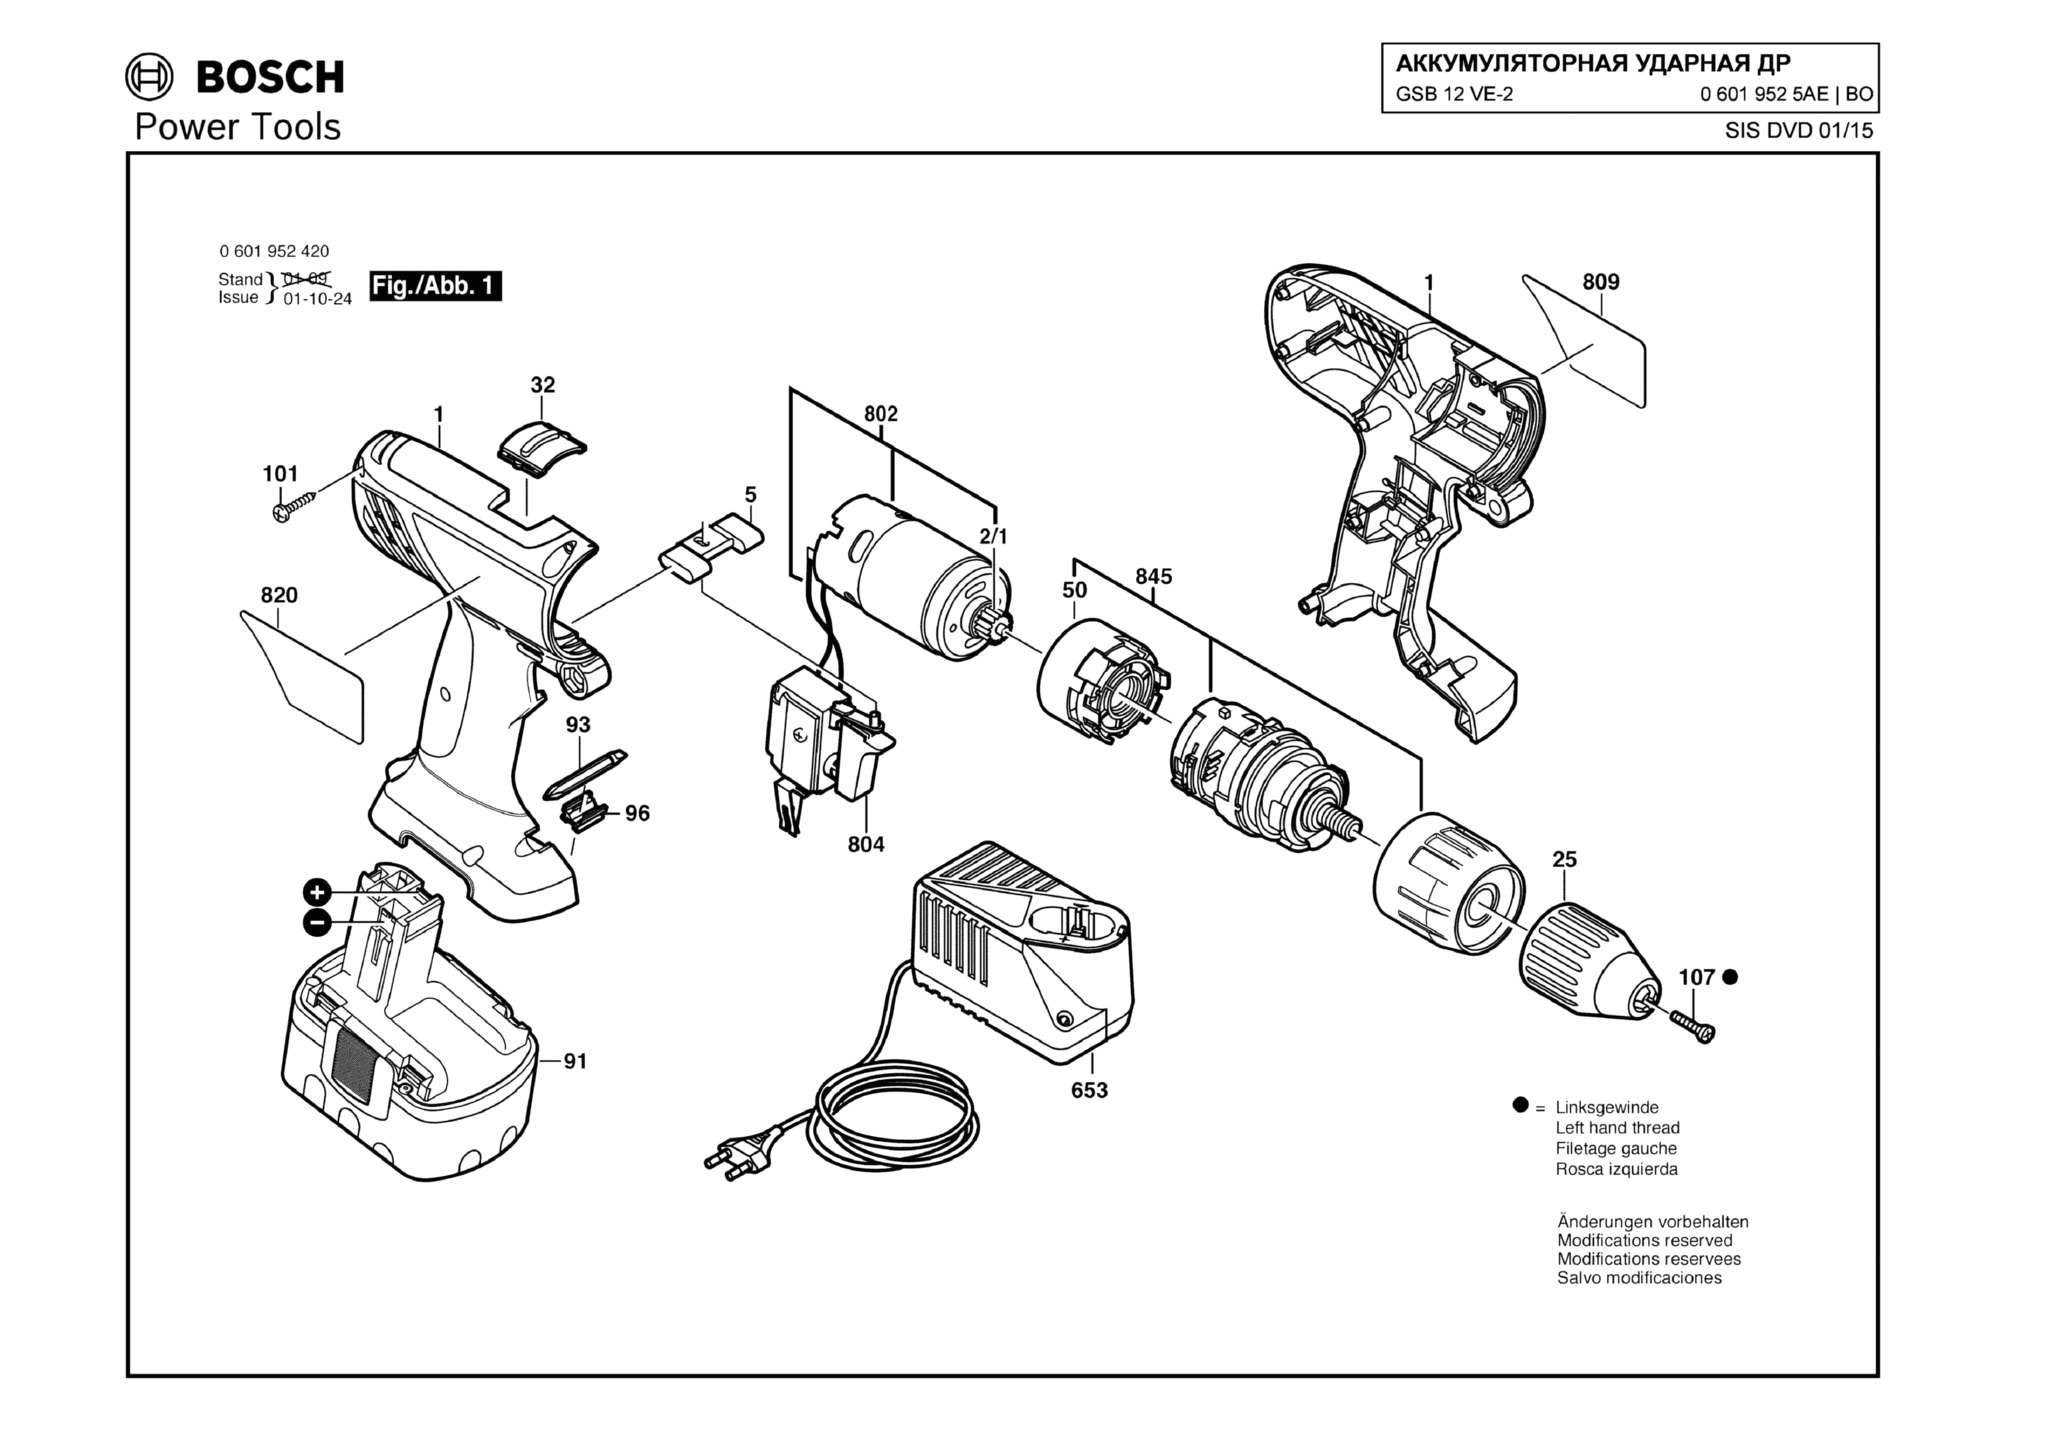 Запчасти, схема и деталировка Bosch GSB 12 VE-2 (ТИП 06019525AE)